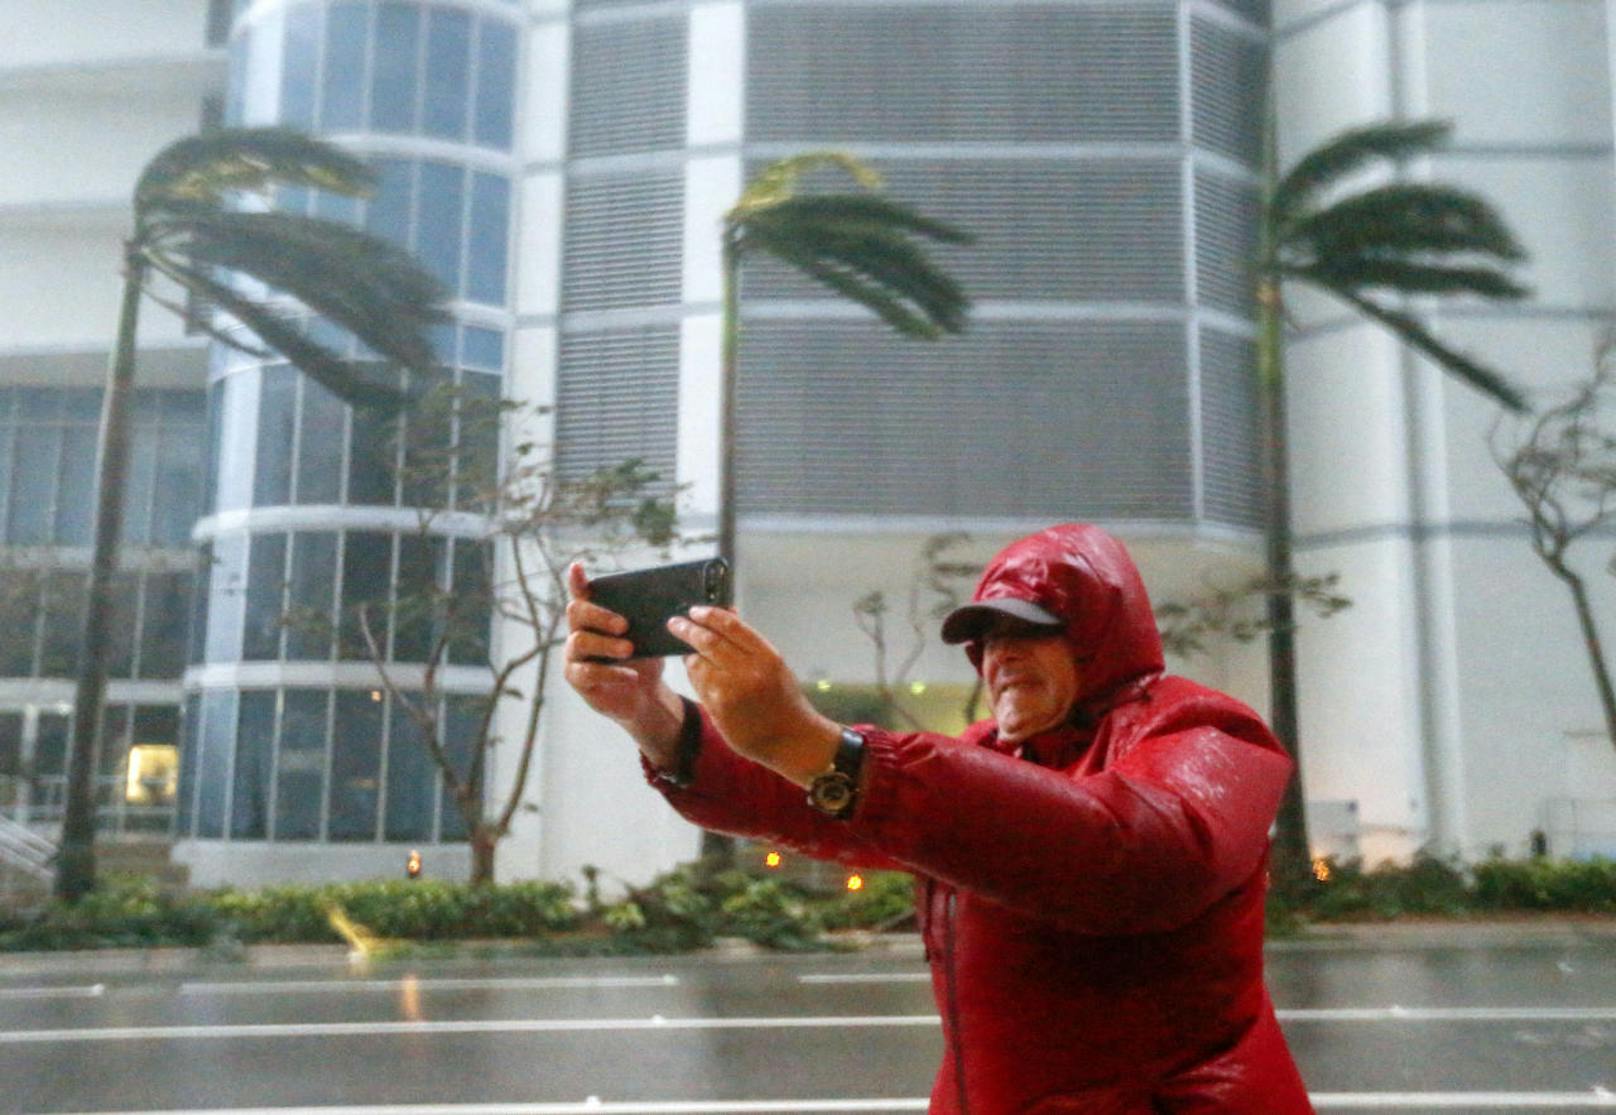 Fotografieren im Hurrikan. Wer die Ausgangssperre bricht, wird verhaftet.